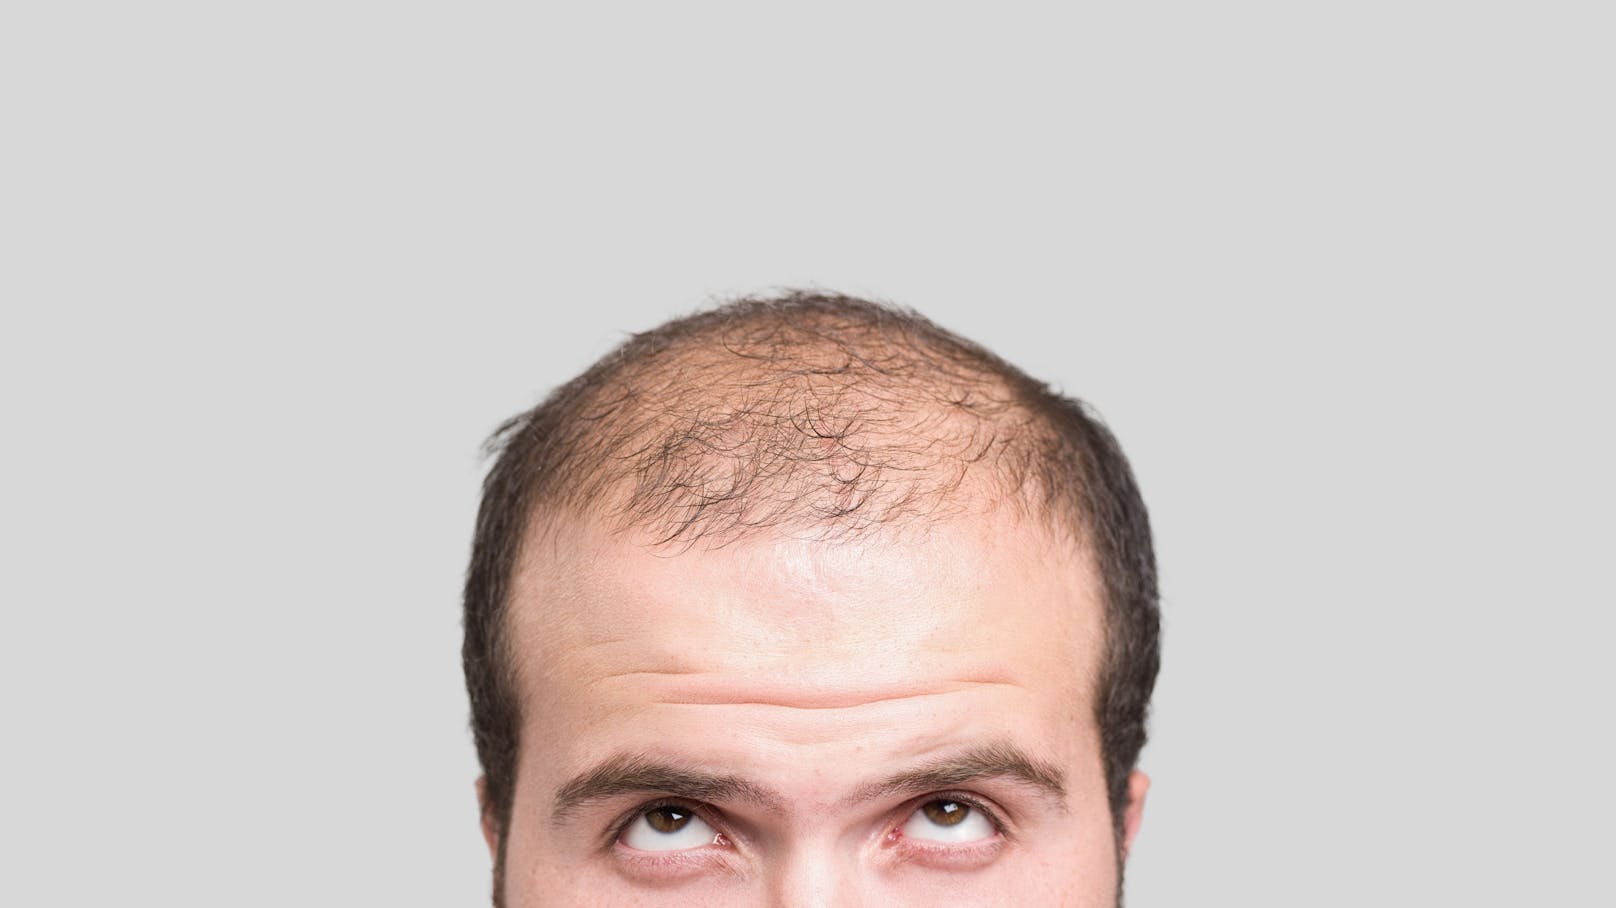 Rund ein Drittel aller Männer über 30 Jahren leiden unter Glatzenbildung, der Anteil steigt mit zunehmendem Alter.